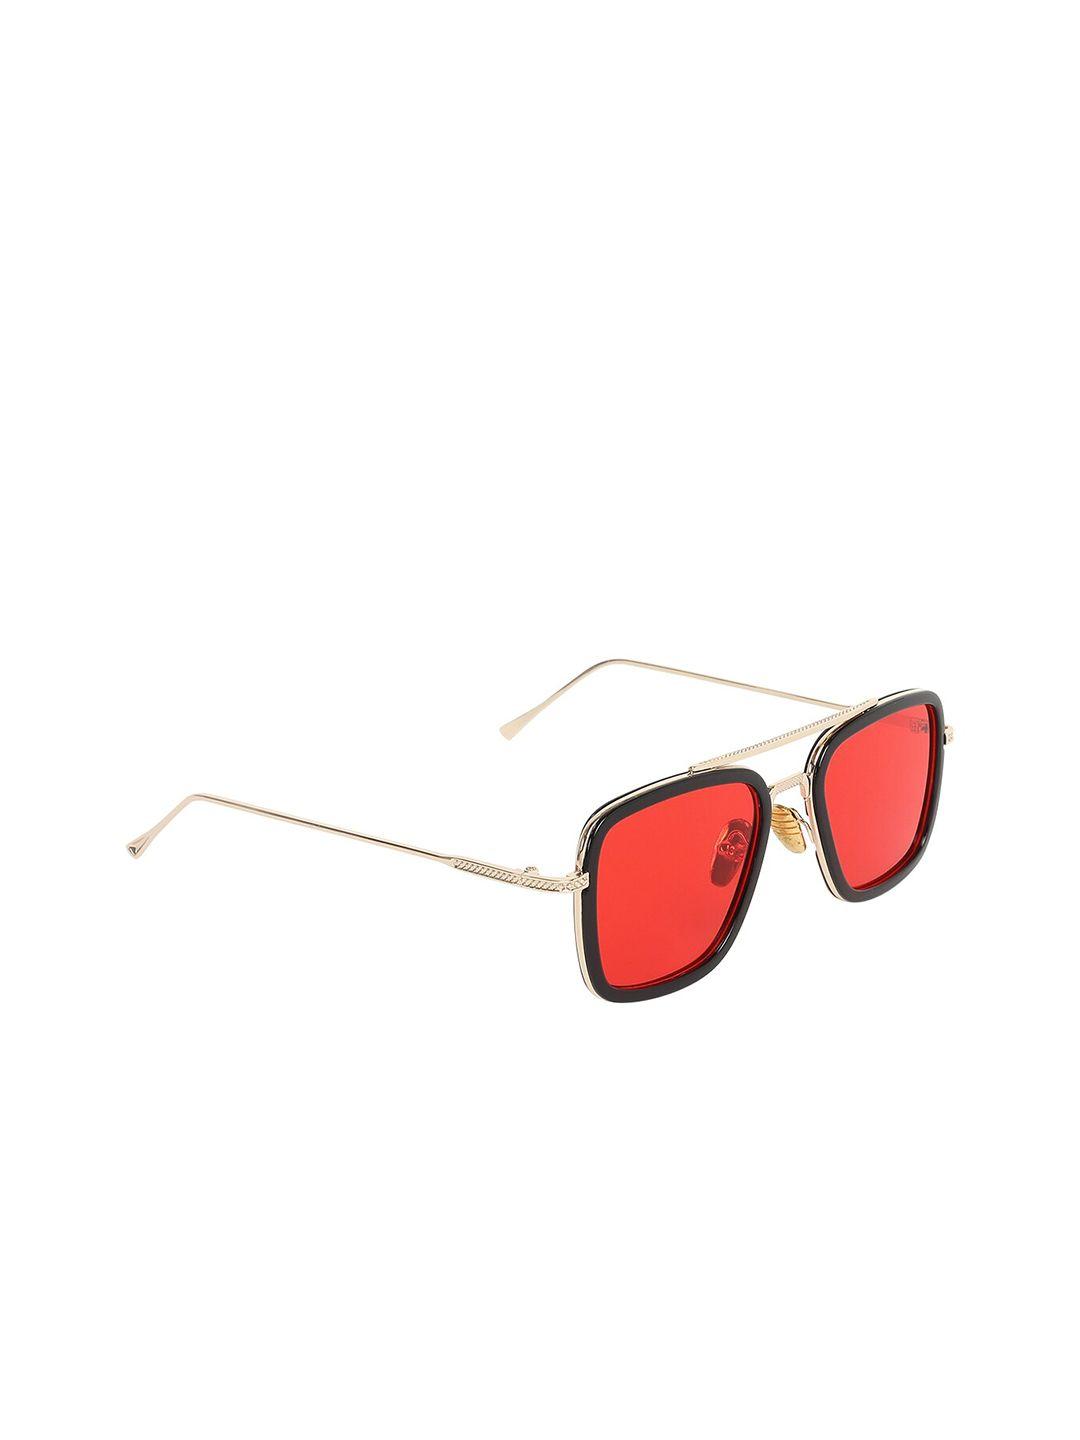 scaglia unisex red square sunglasses tony_red_scg